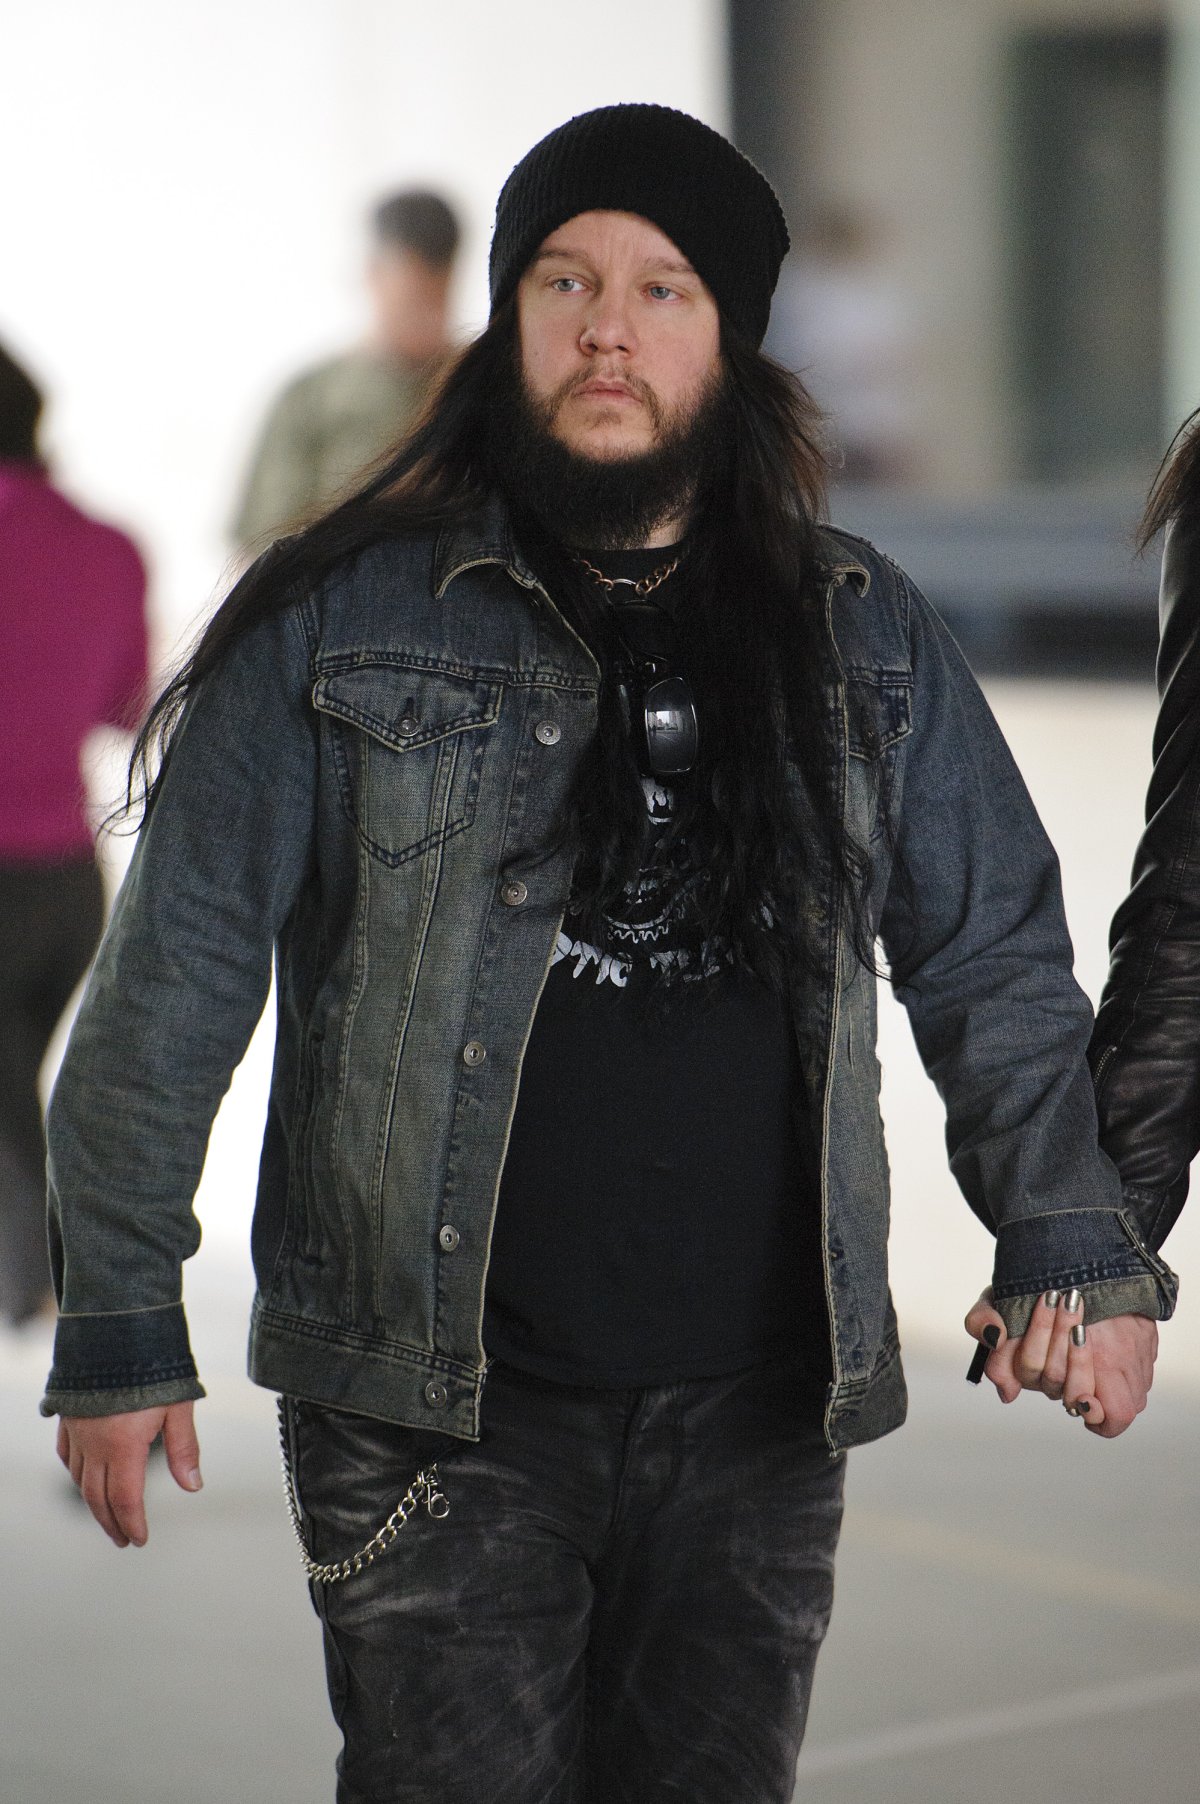 Slipknot's Joey Jordison in London, U.K.